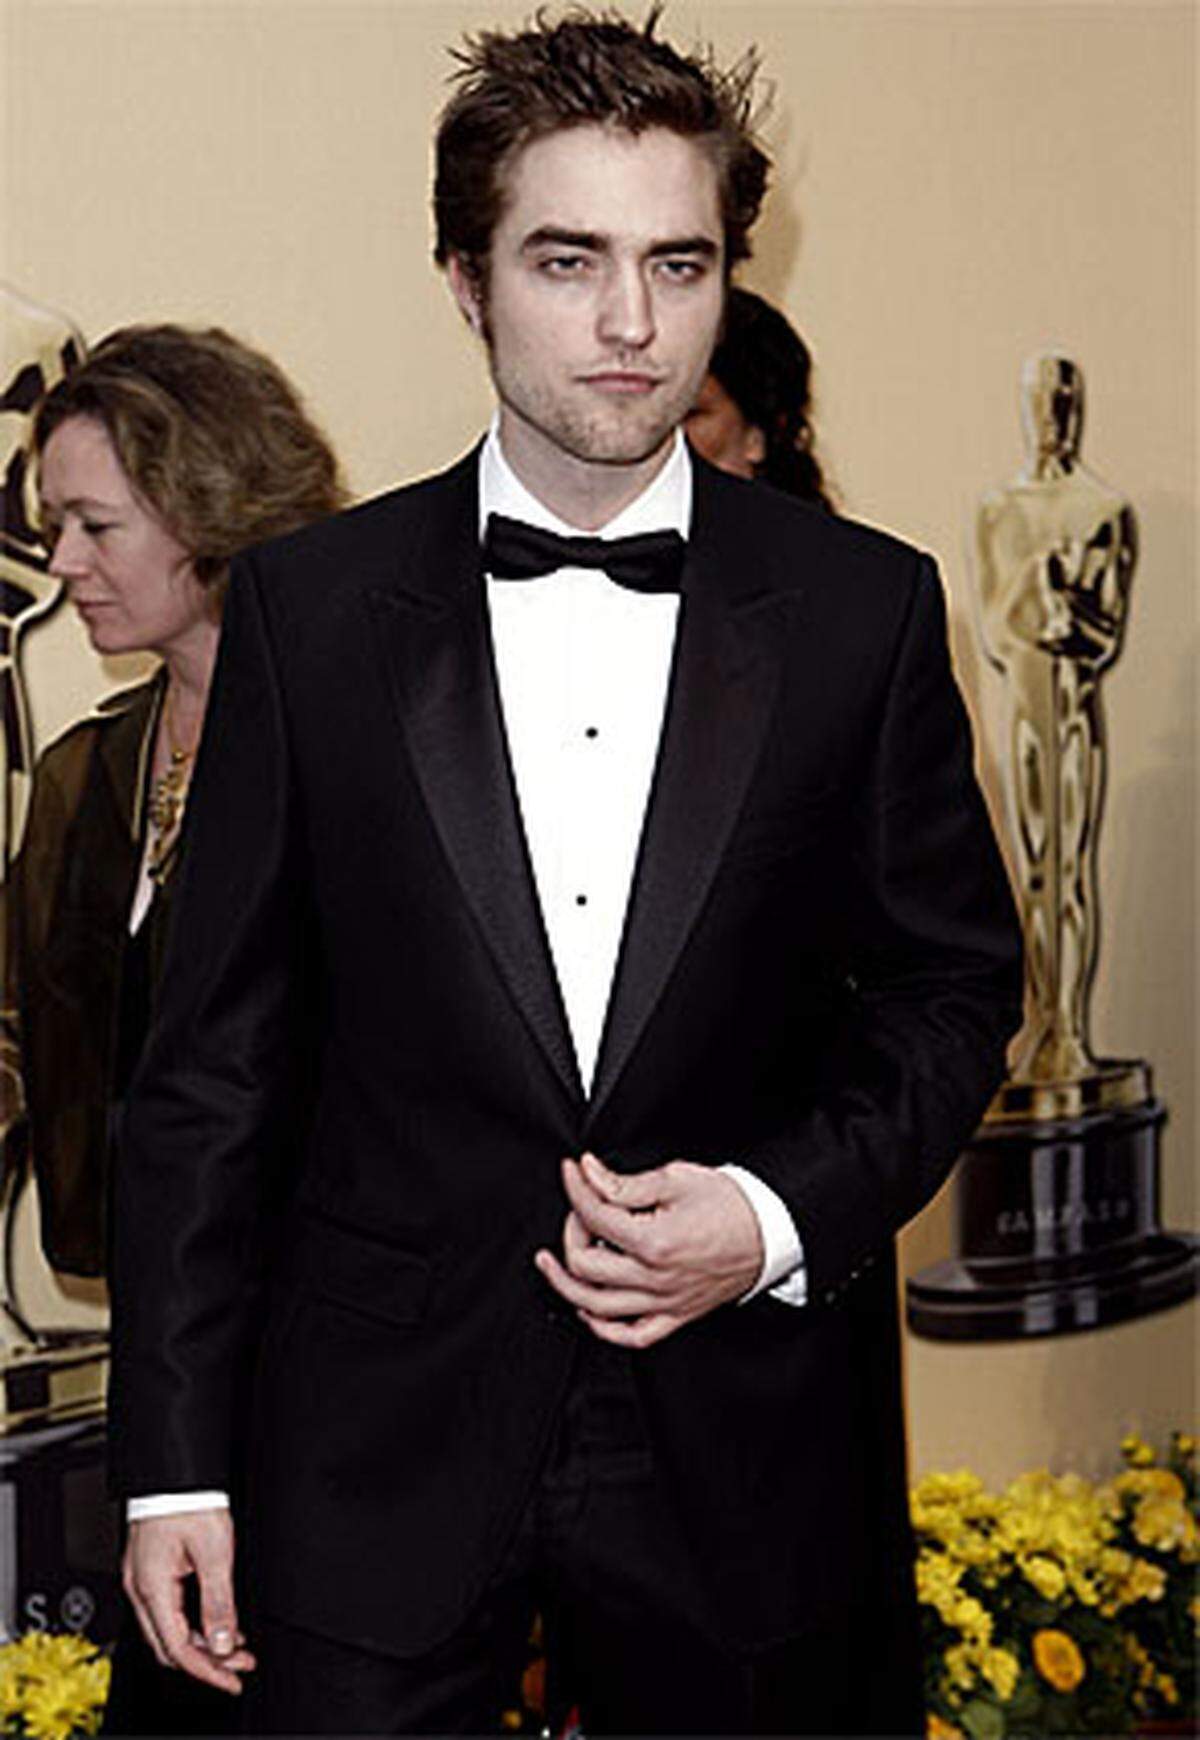 Gesichtsfarbe: extrablass. Mädchenschwarm und Vampir-Darsteller Robert Pattinson ("Twilight") präsentierte einen Award.